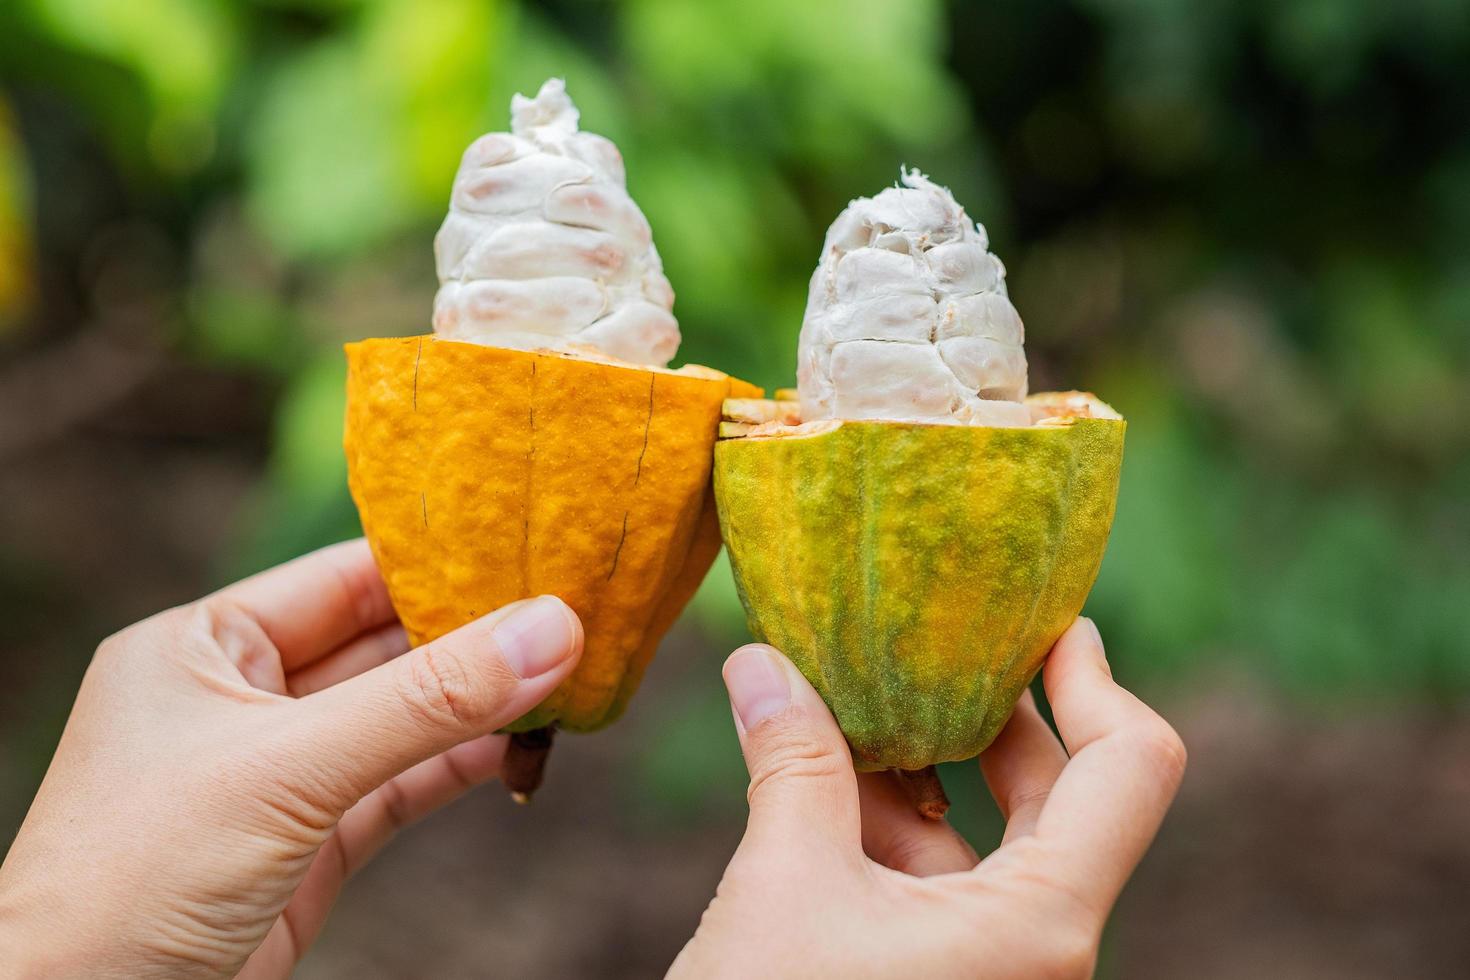 fruit de cacao sur un cacaoyer dans une ferme de forêt tropicale. photo